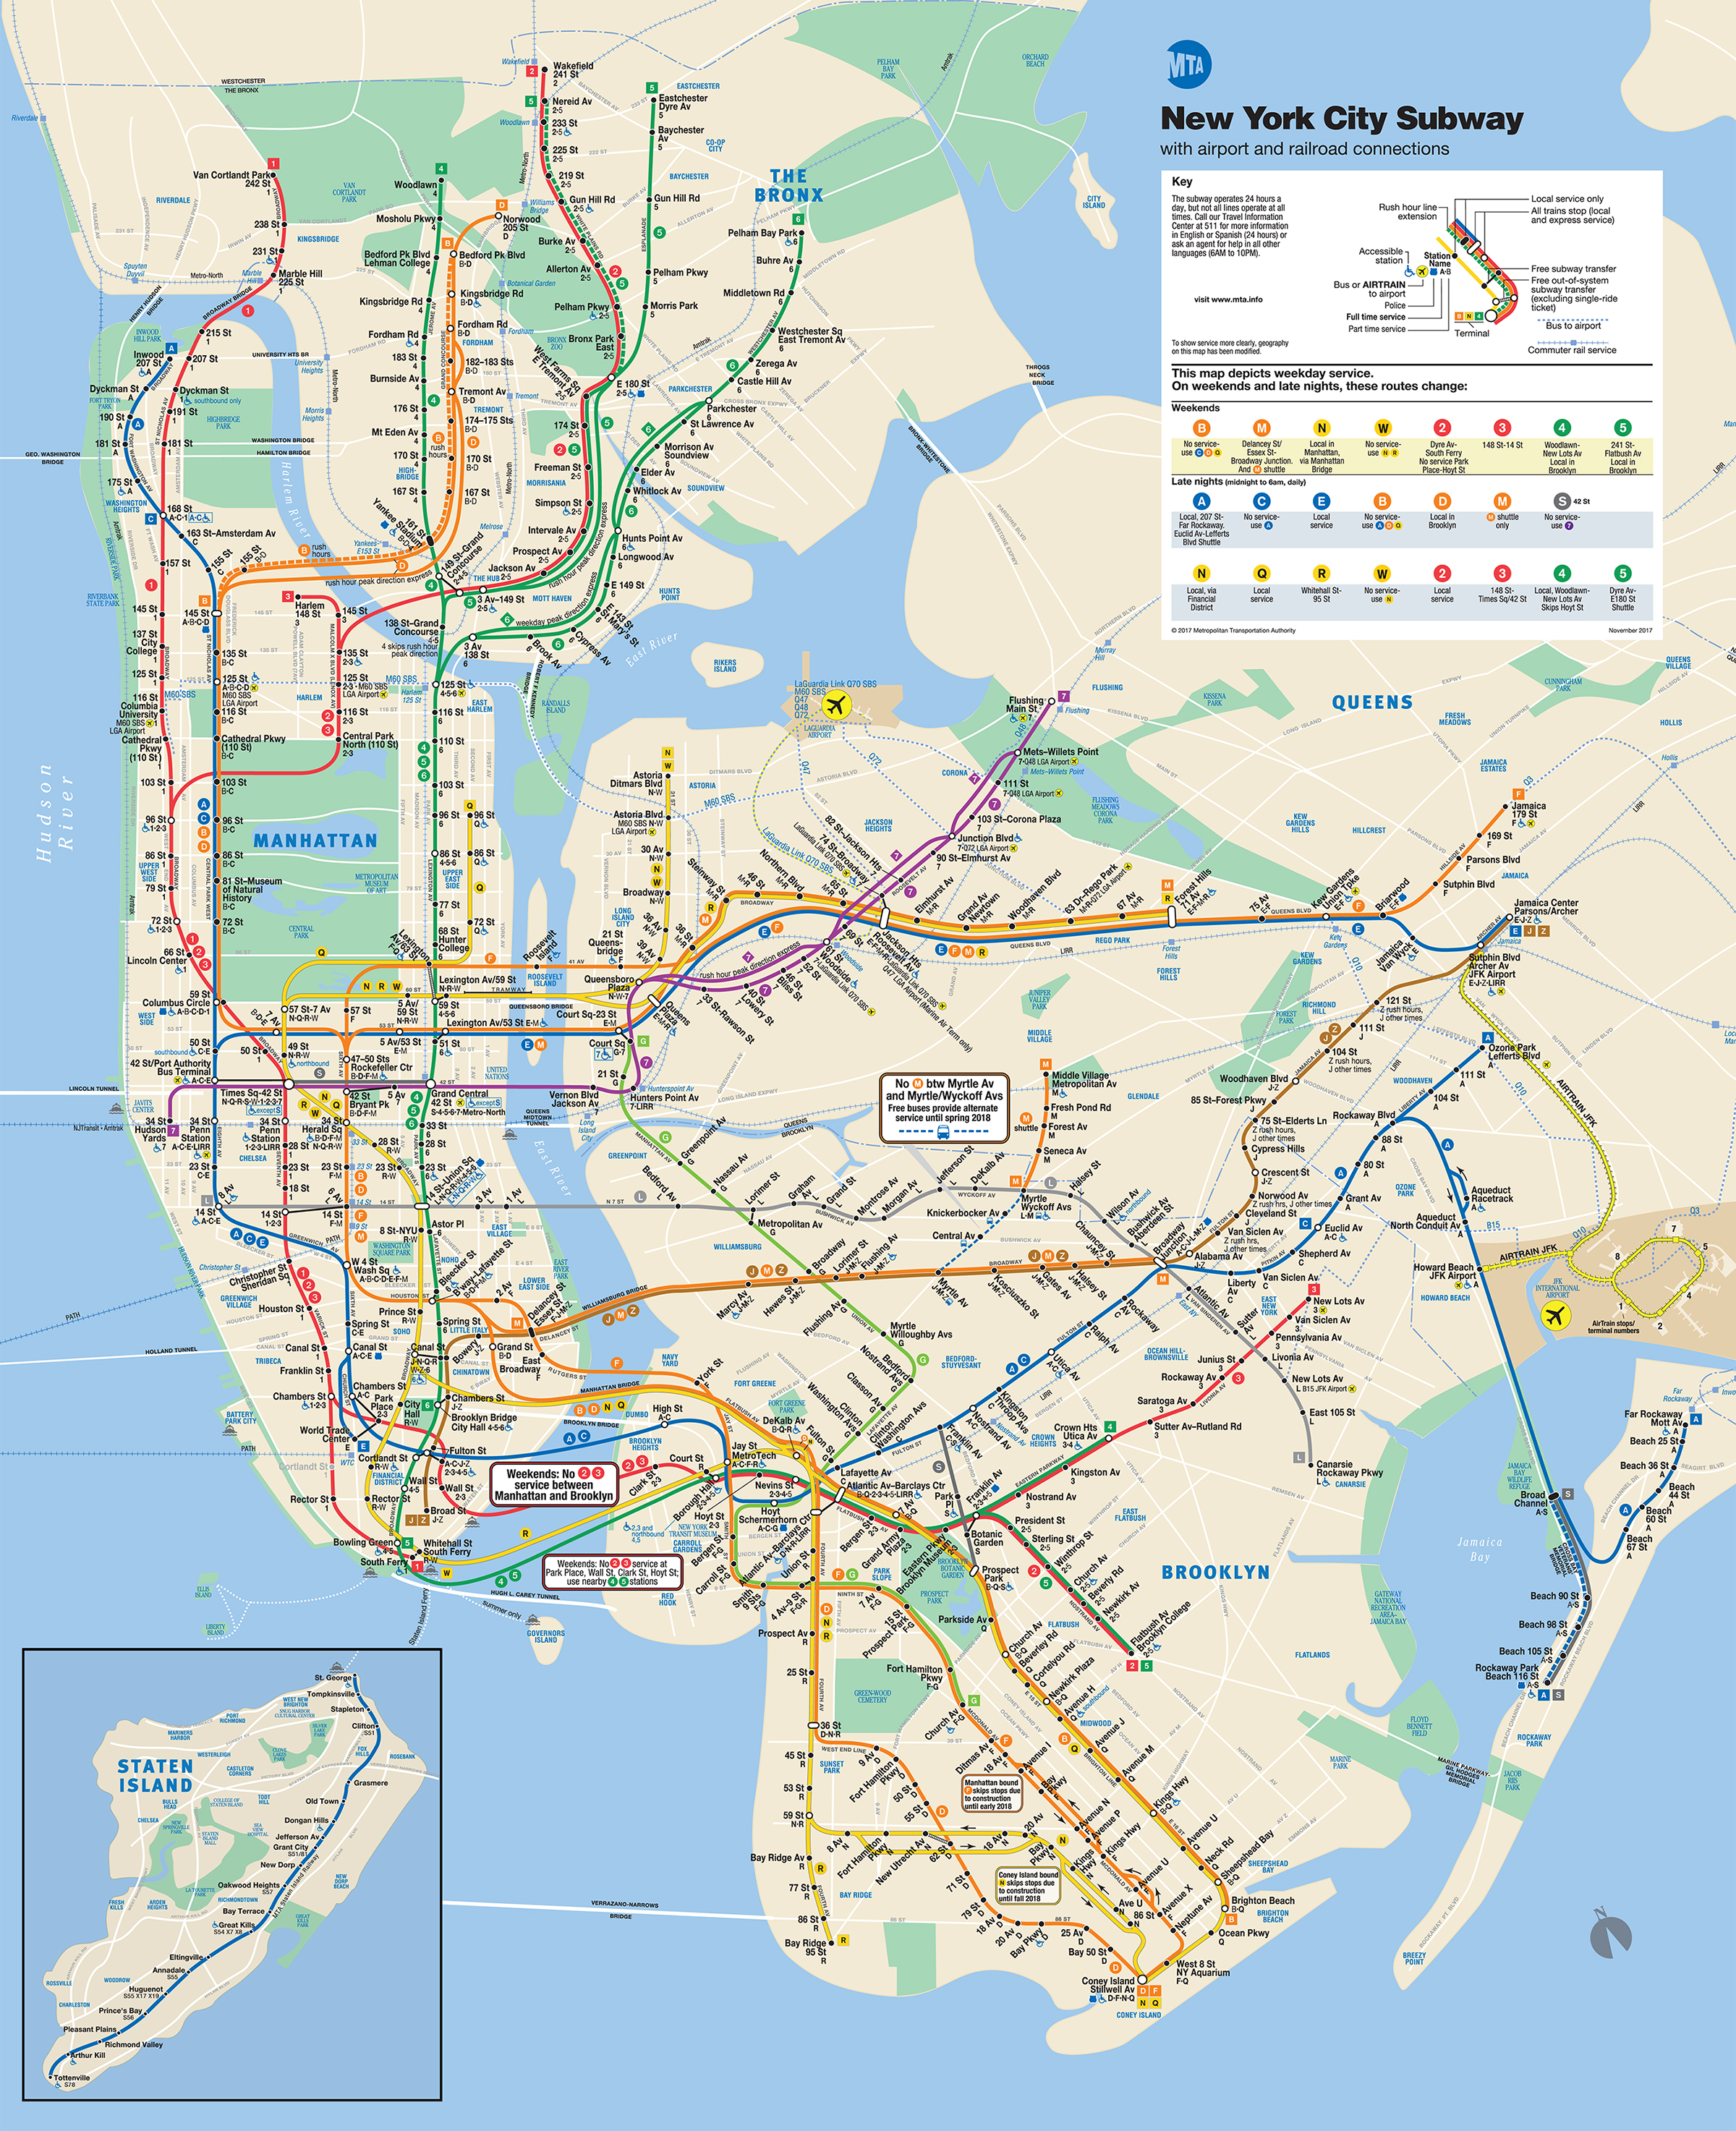 MTA Stations